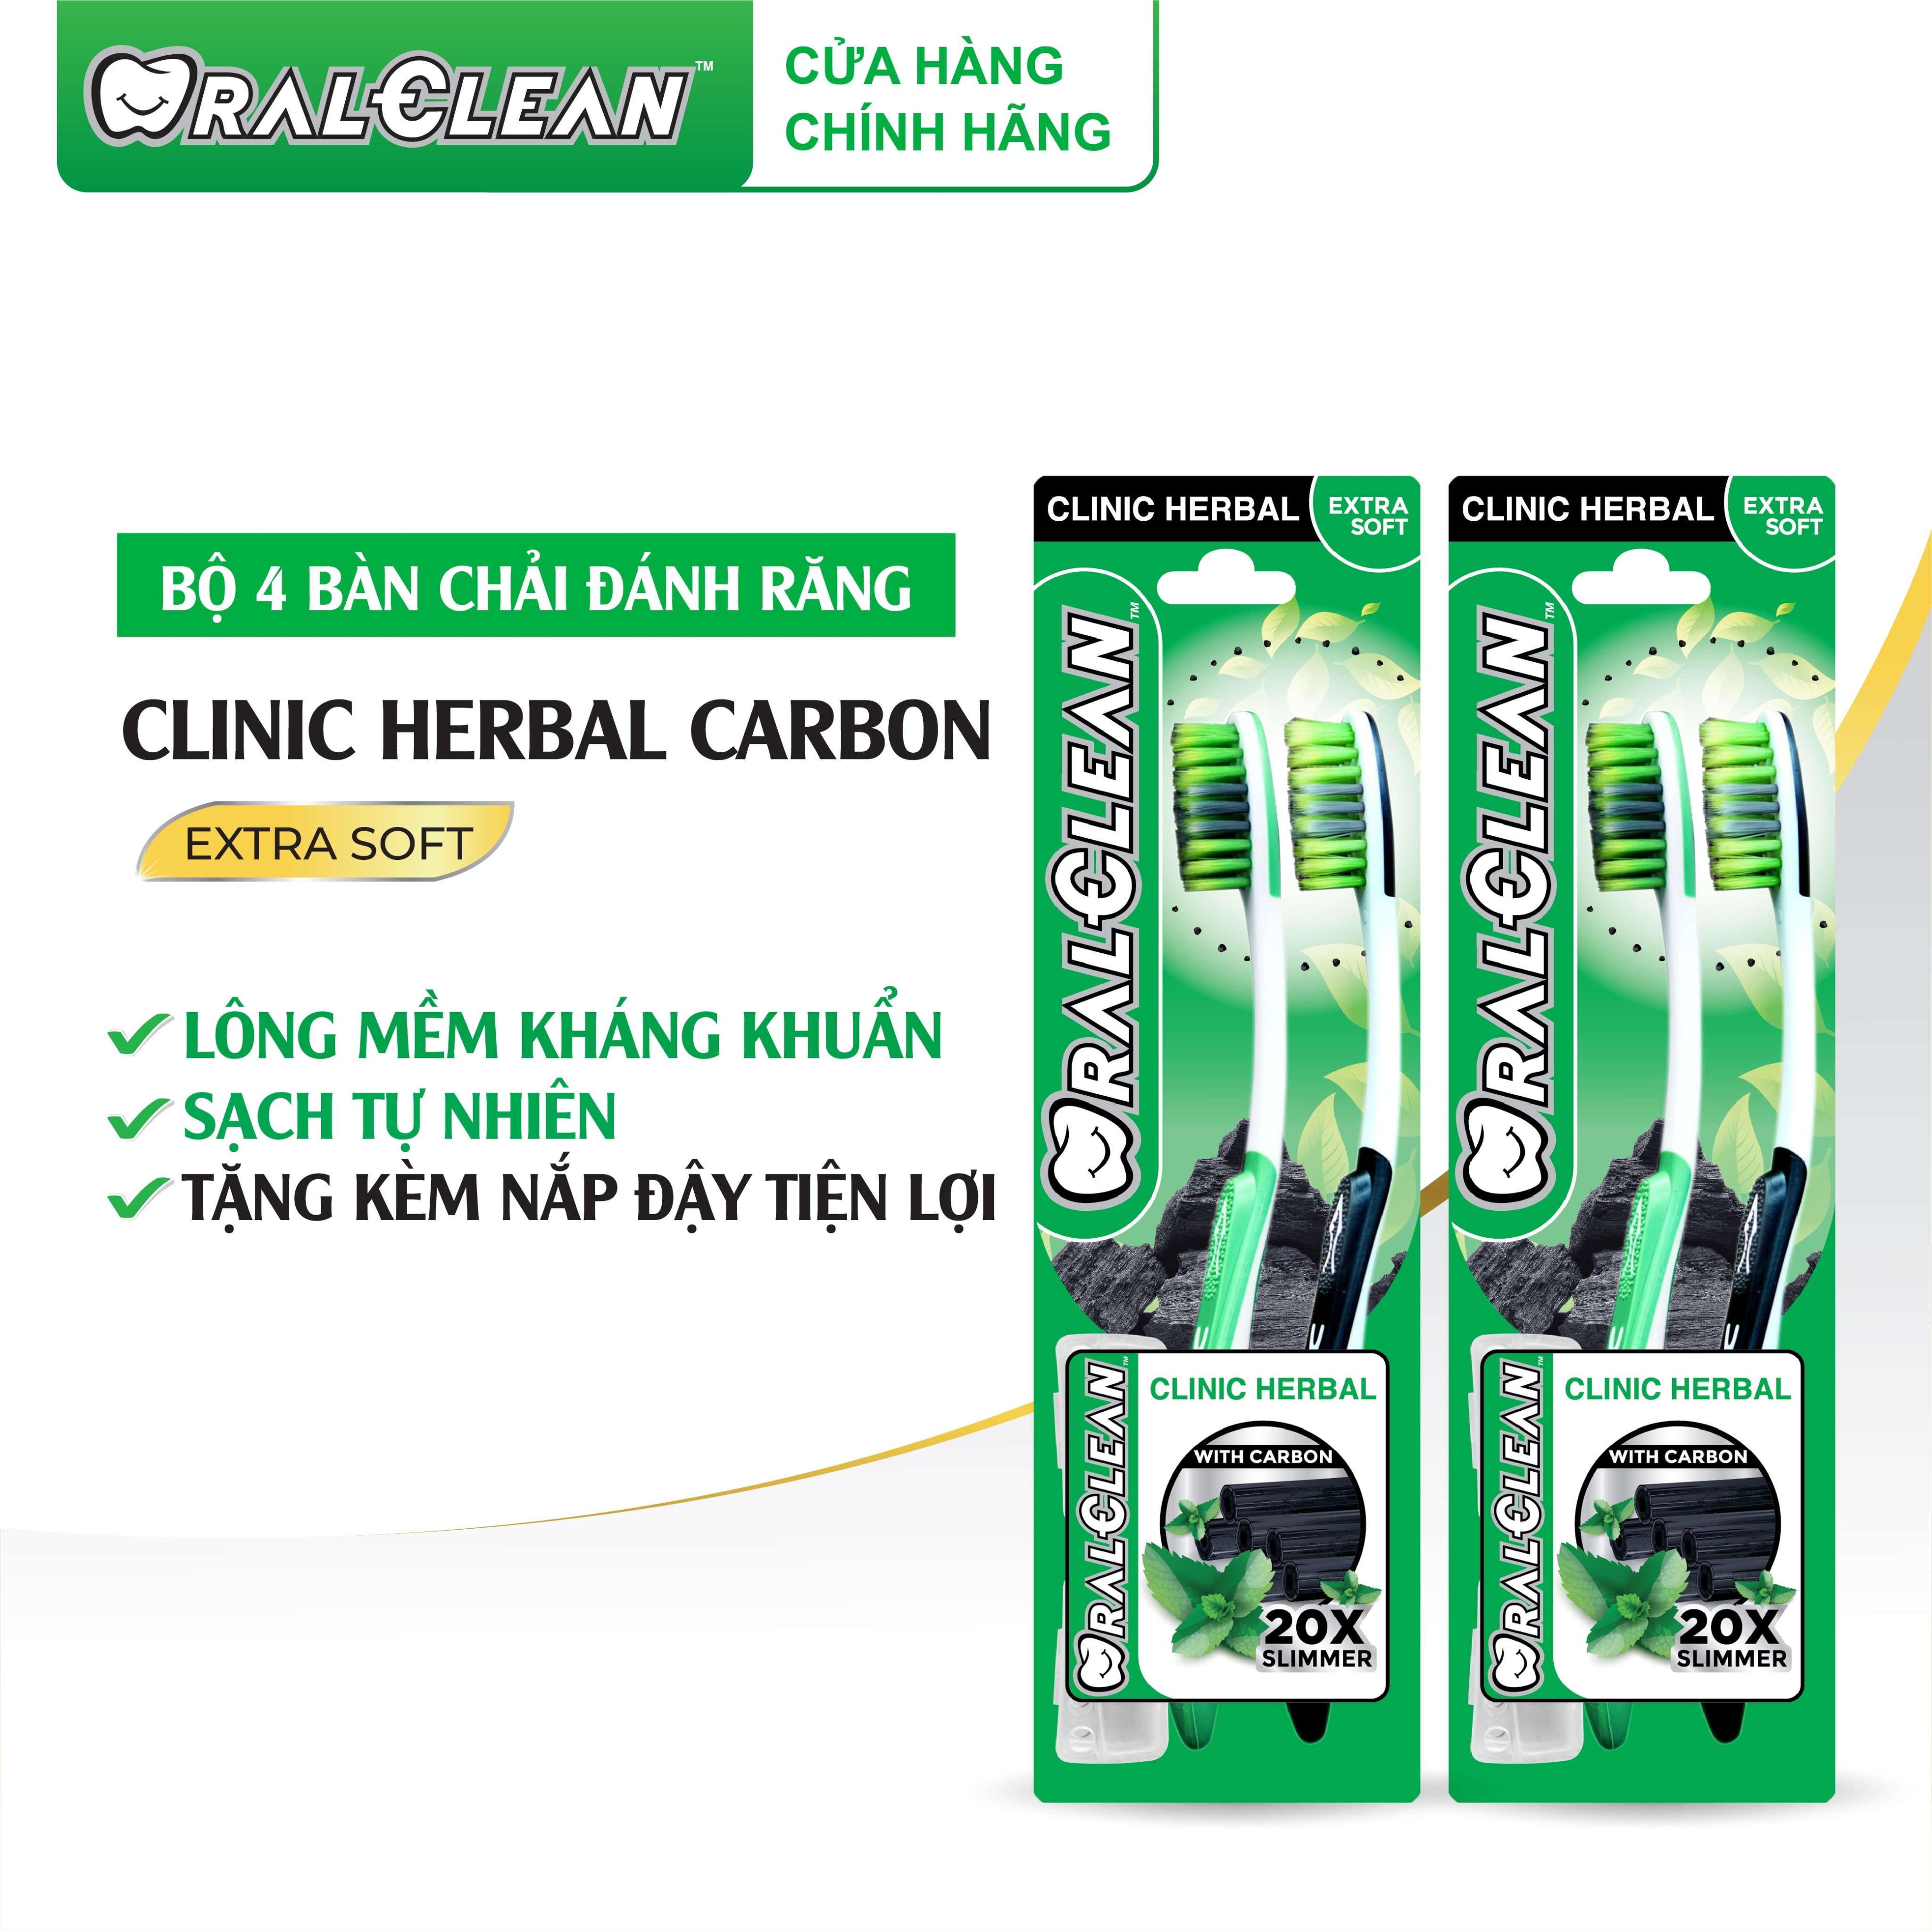 Bộ 4 bàn chải OralClean Clinic Herbal Carbon